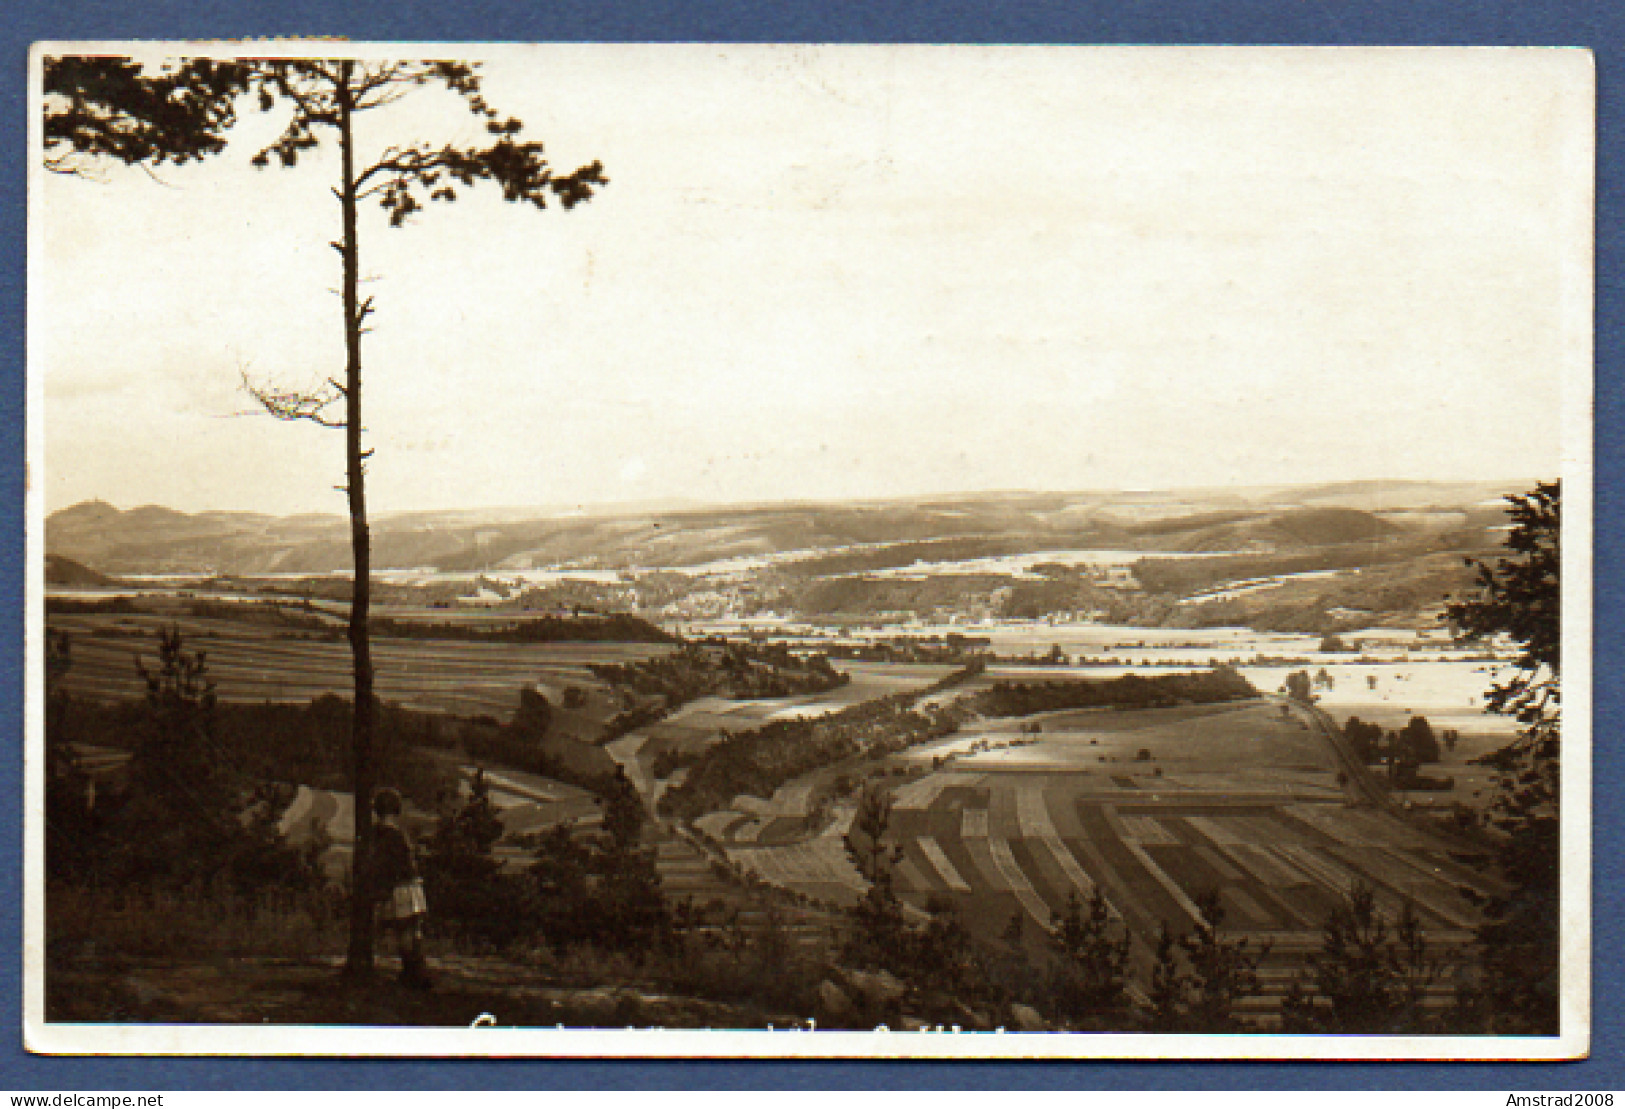 1931 - KAHLA  - ALLEMAGNE - DEUTSCHLAND - GERMANIA - Kahla